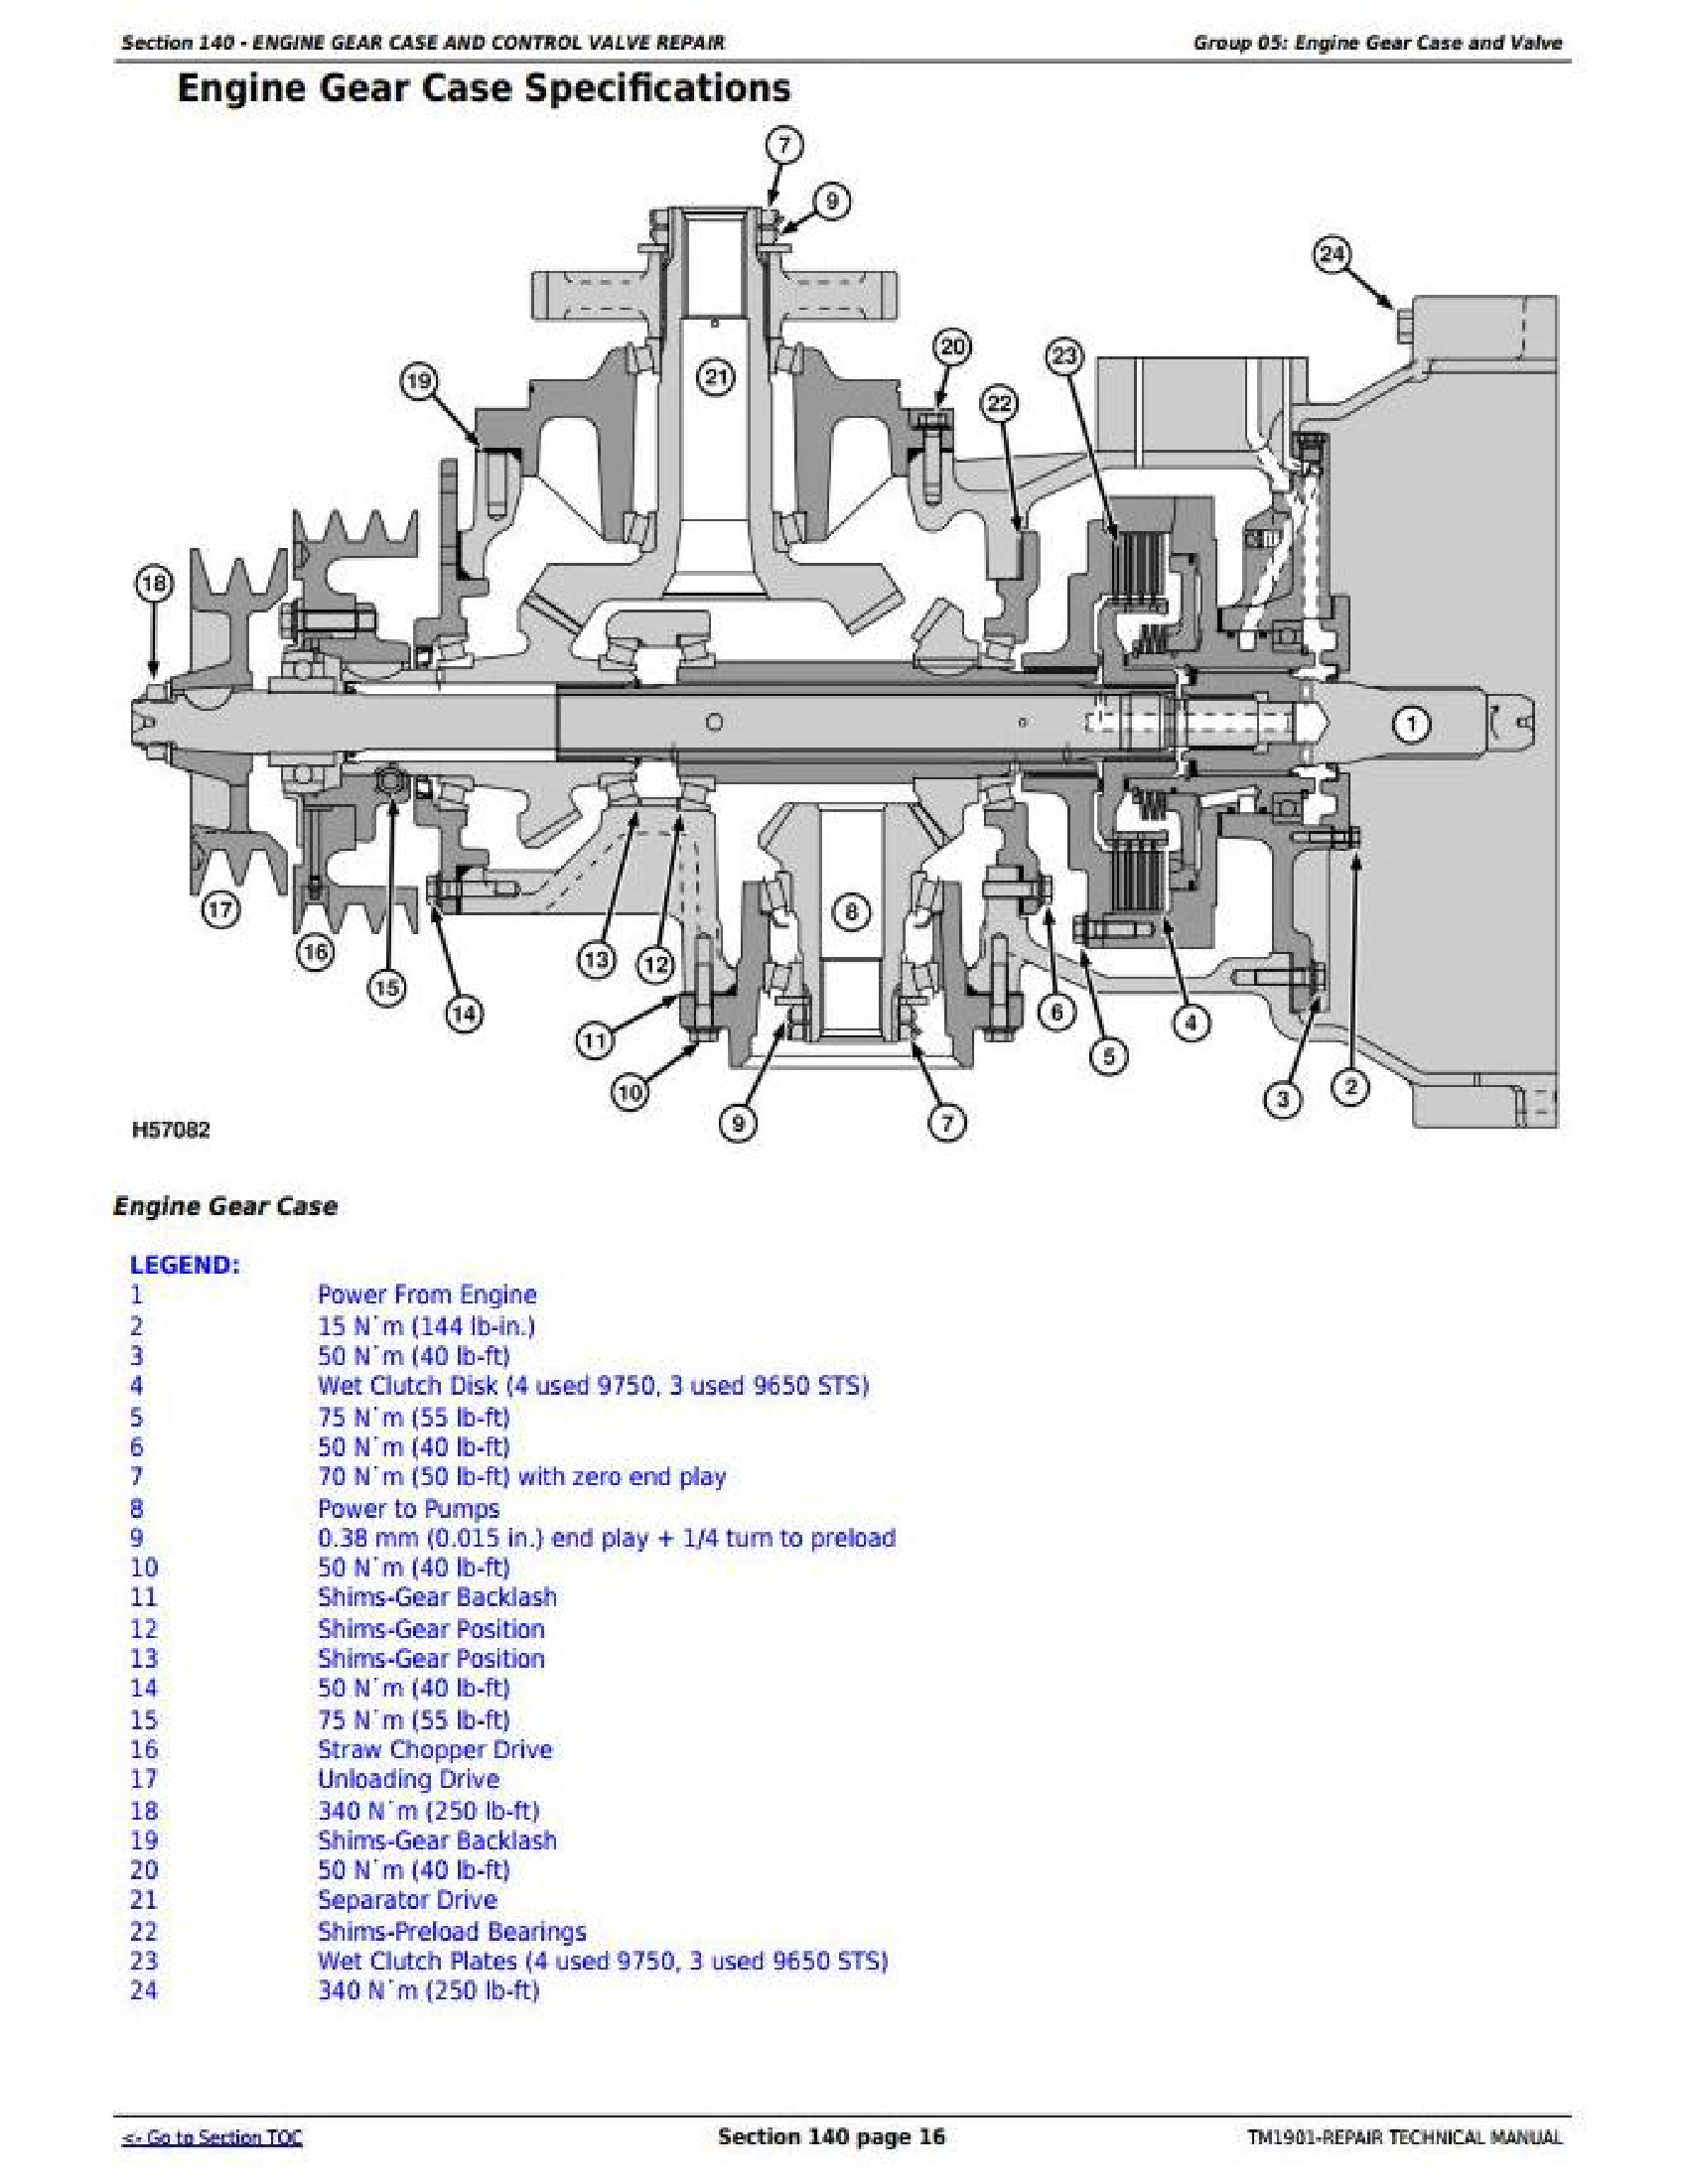 John Deere 695600 manual pdf